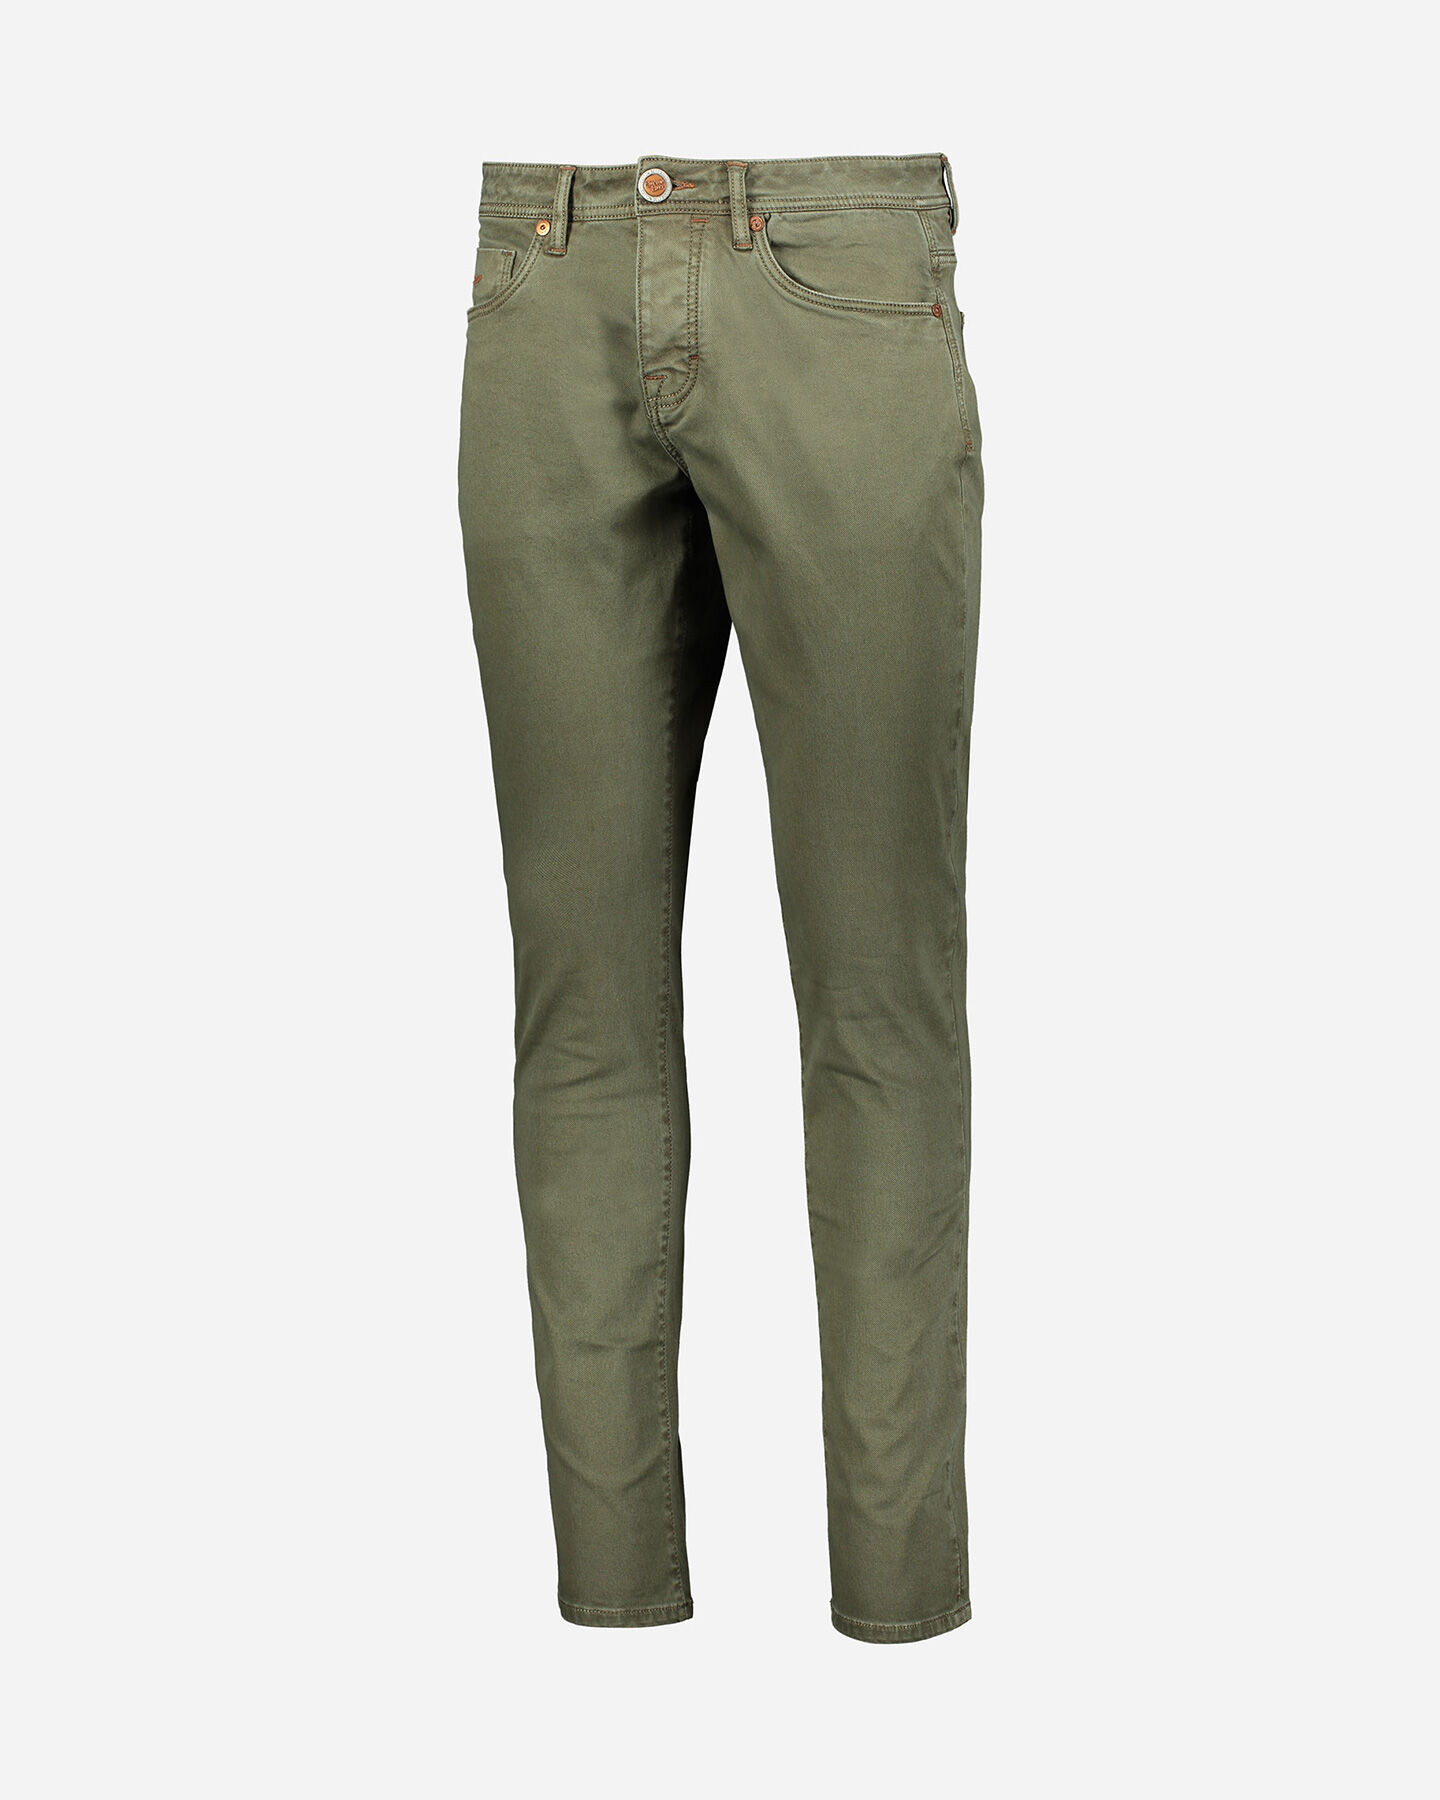  Pantalone COTTON BELT 5T HAMILTON SLIM M S4095903|845|30 scatto 0